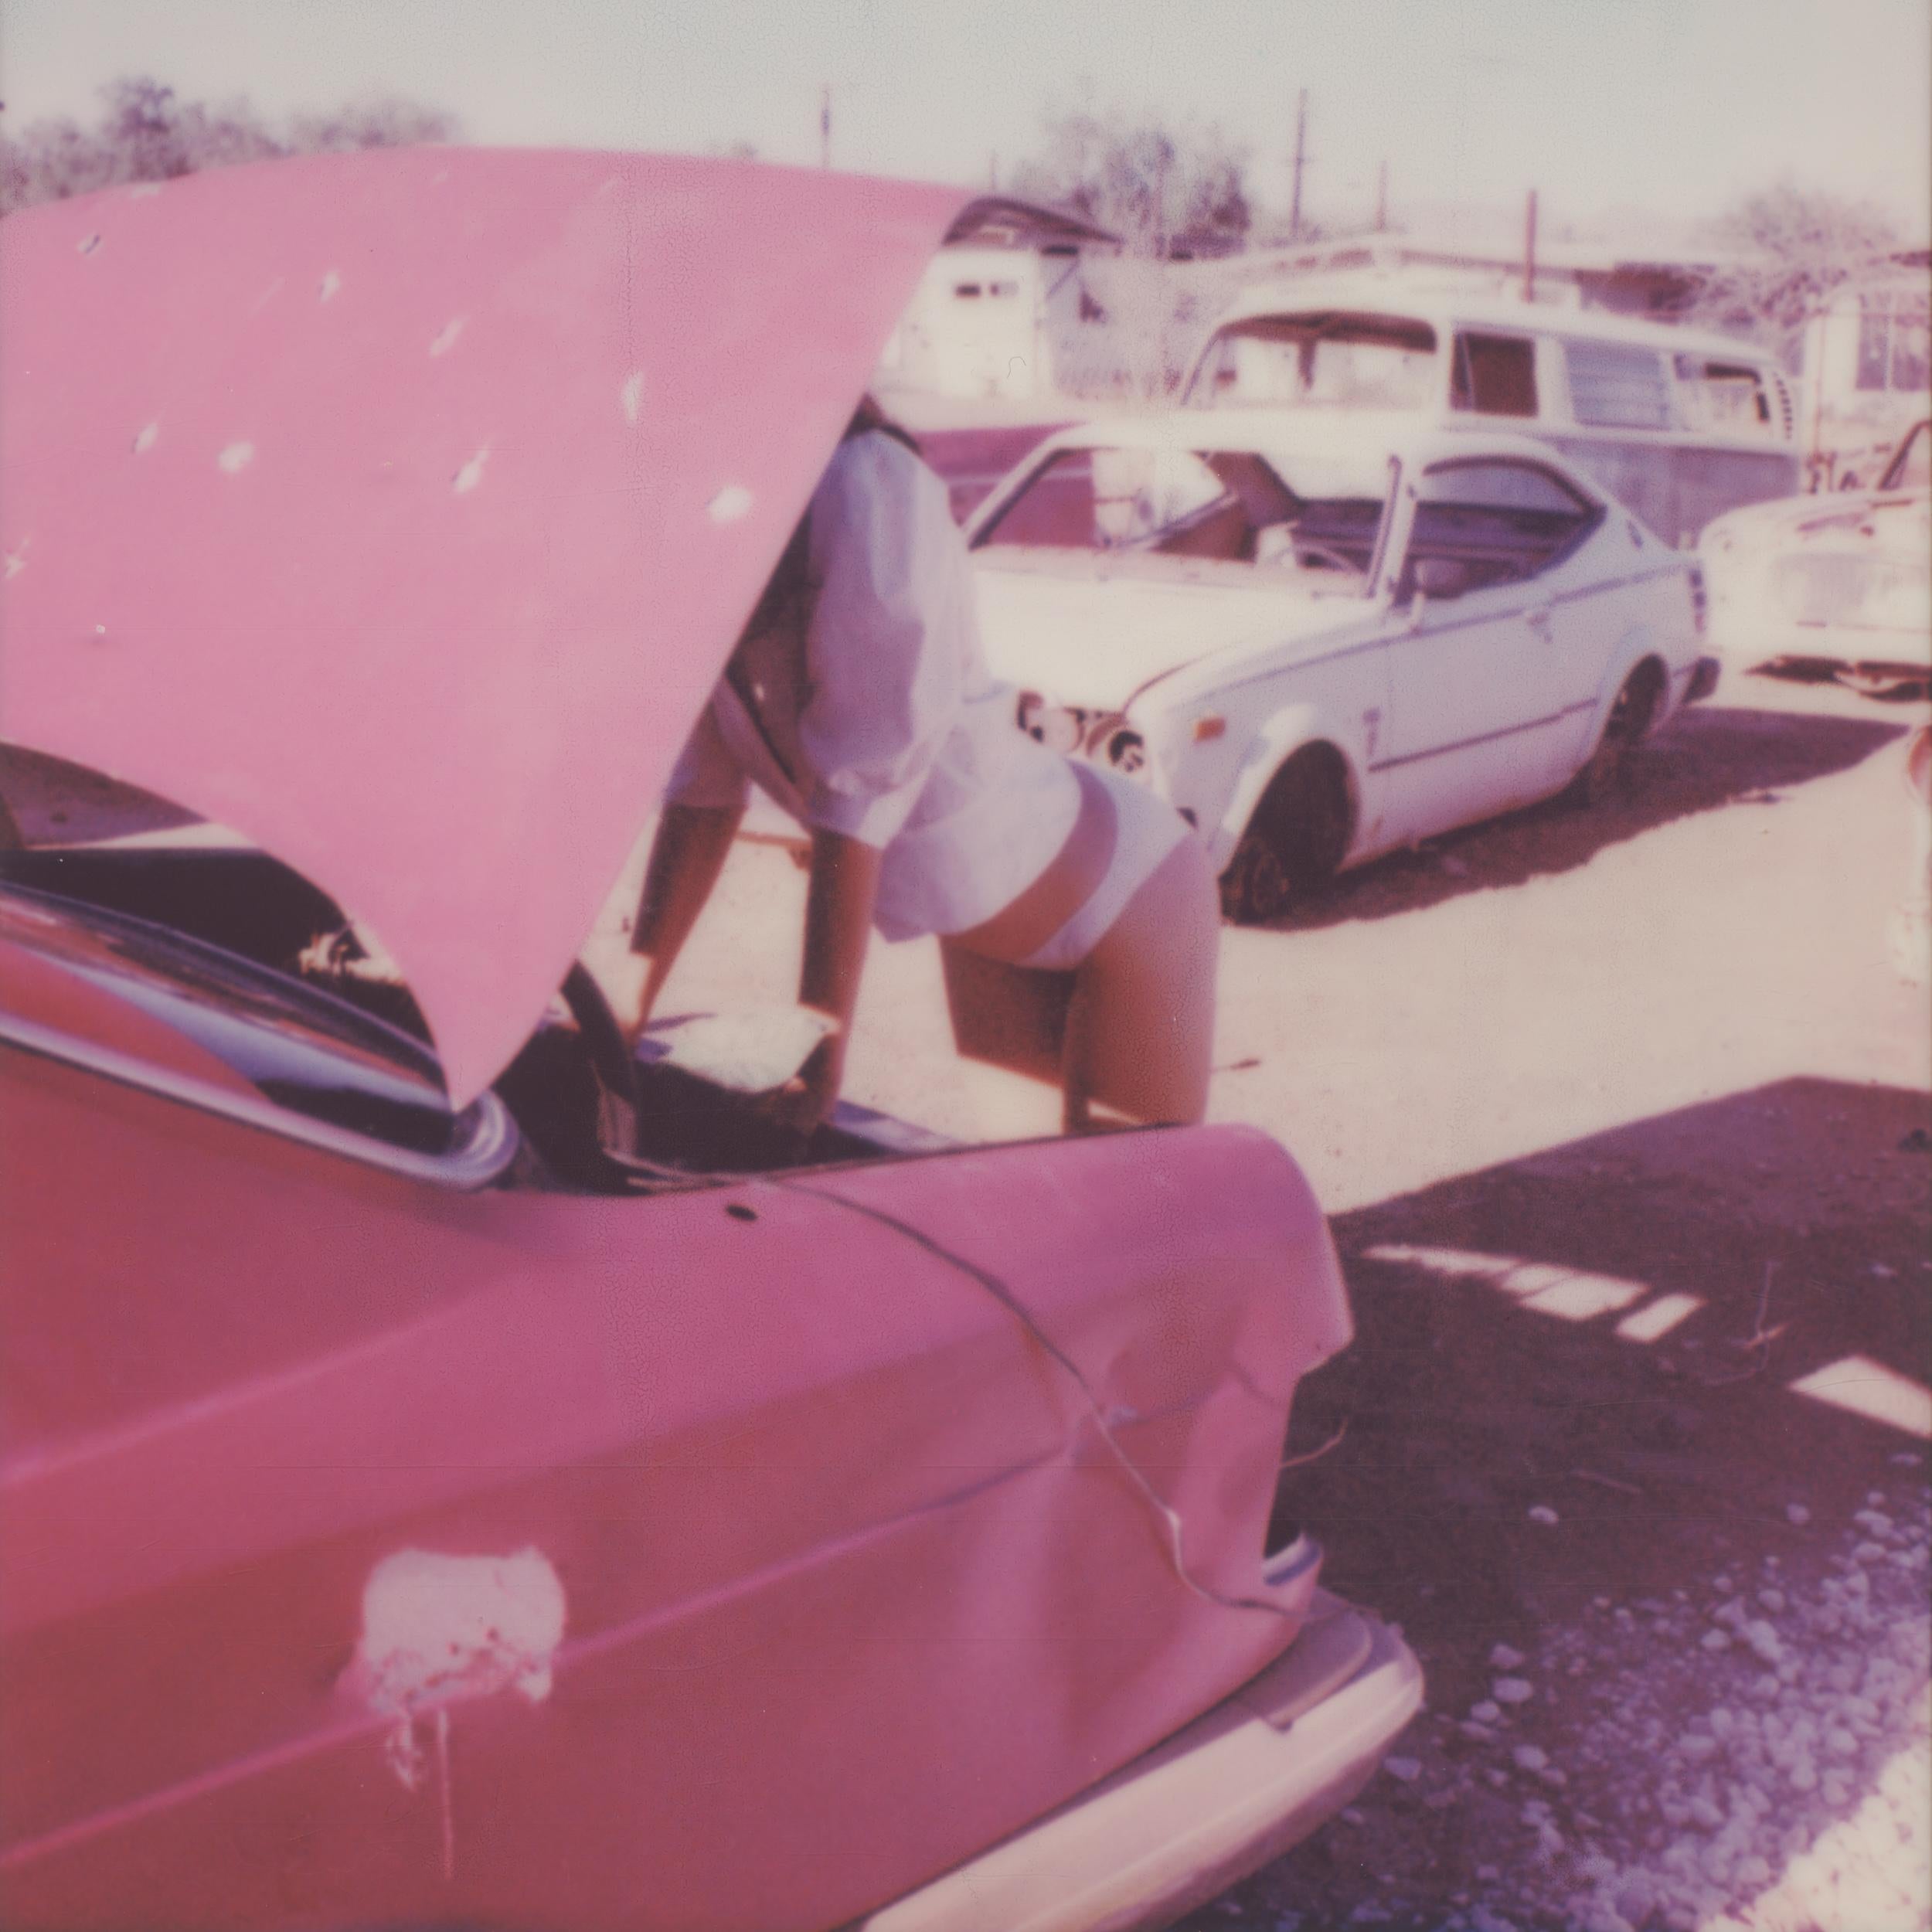 Breakdown - Zeitgenössisch, Polaroid, Vintage-Autos, Farbe, Frauen, 21. Jahrhundert